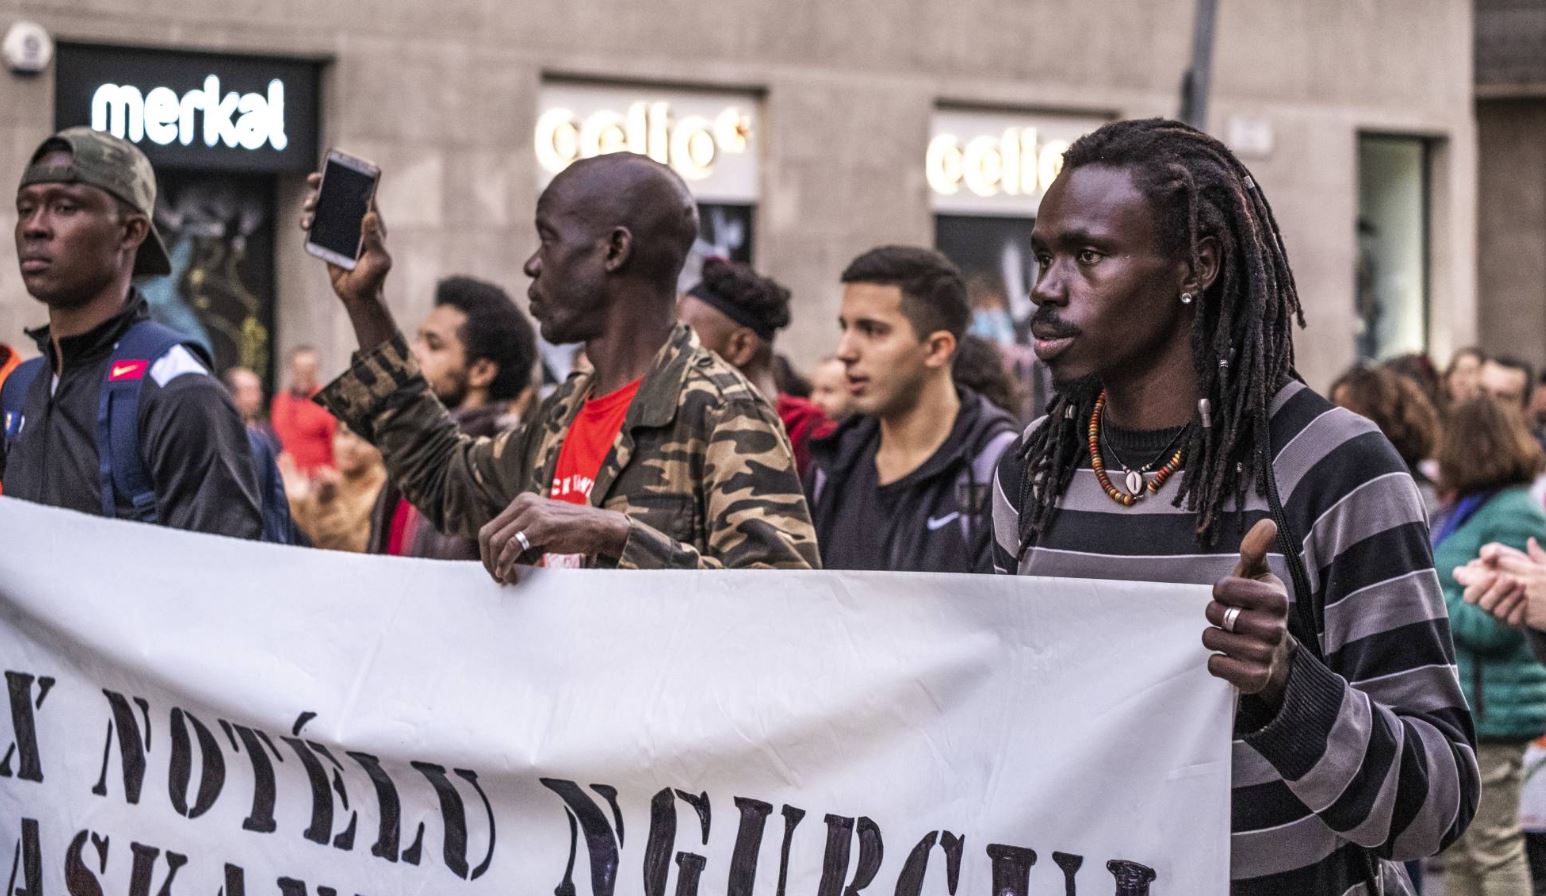 Imagen: En noviembre pasado se realizó una manifestación antirracista en Barcelona, España, el 9 de febrero de 2019